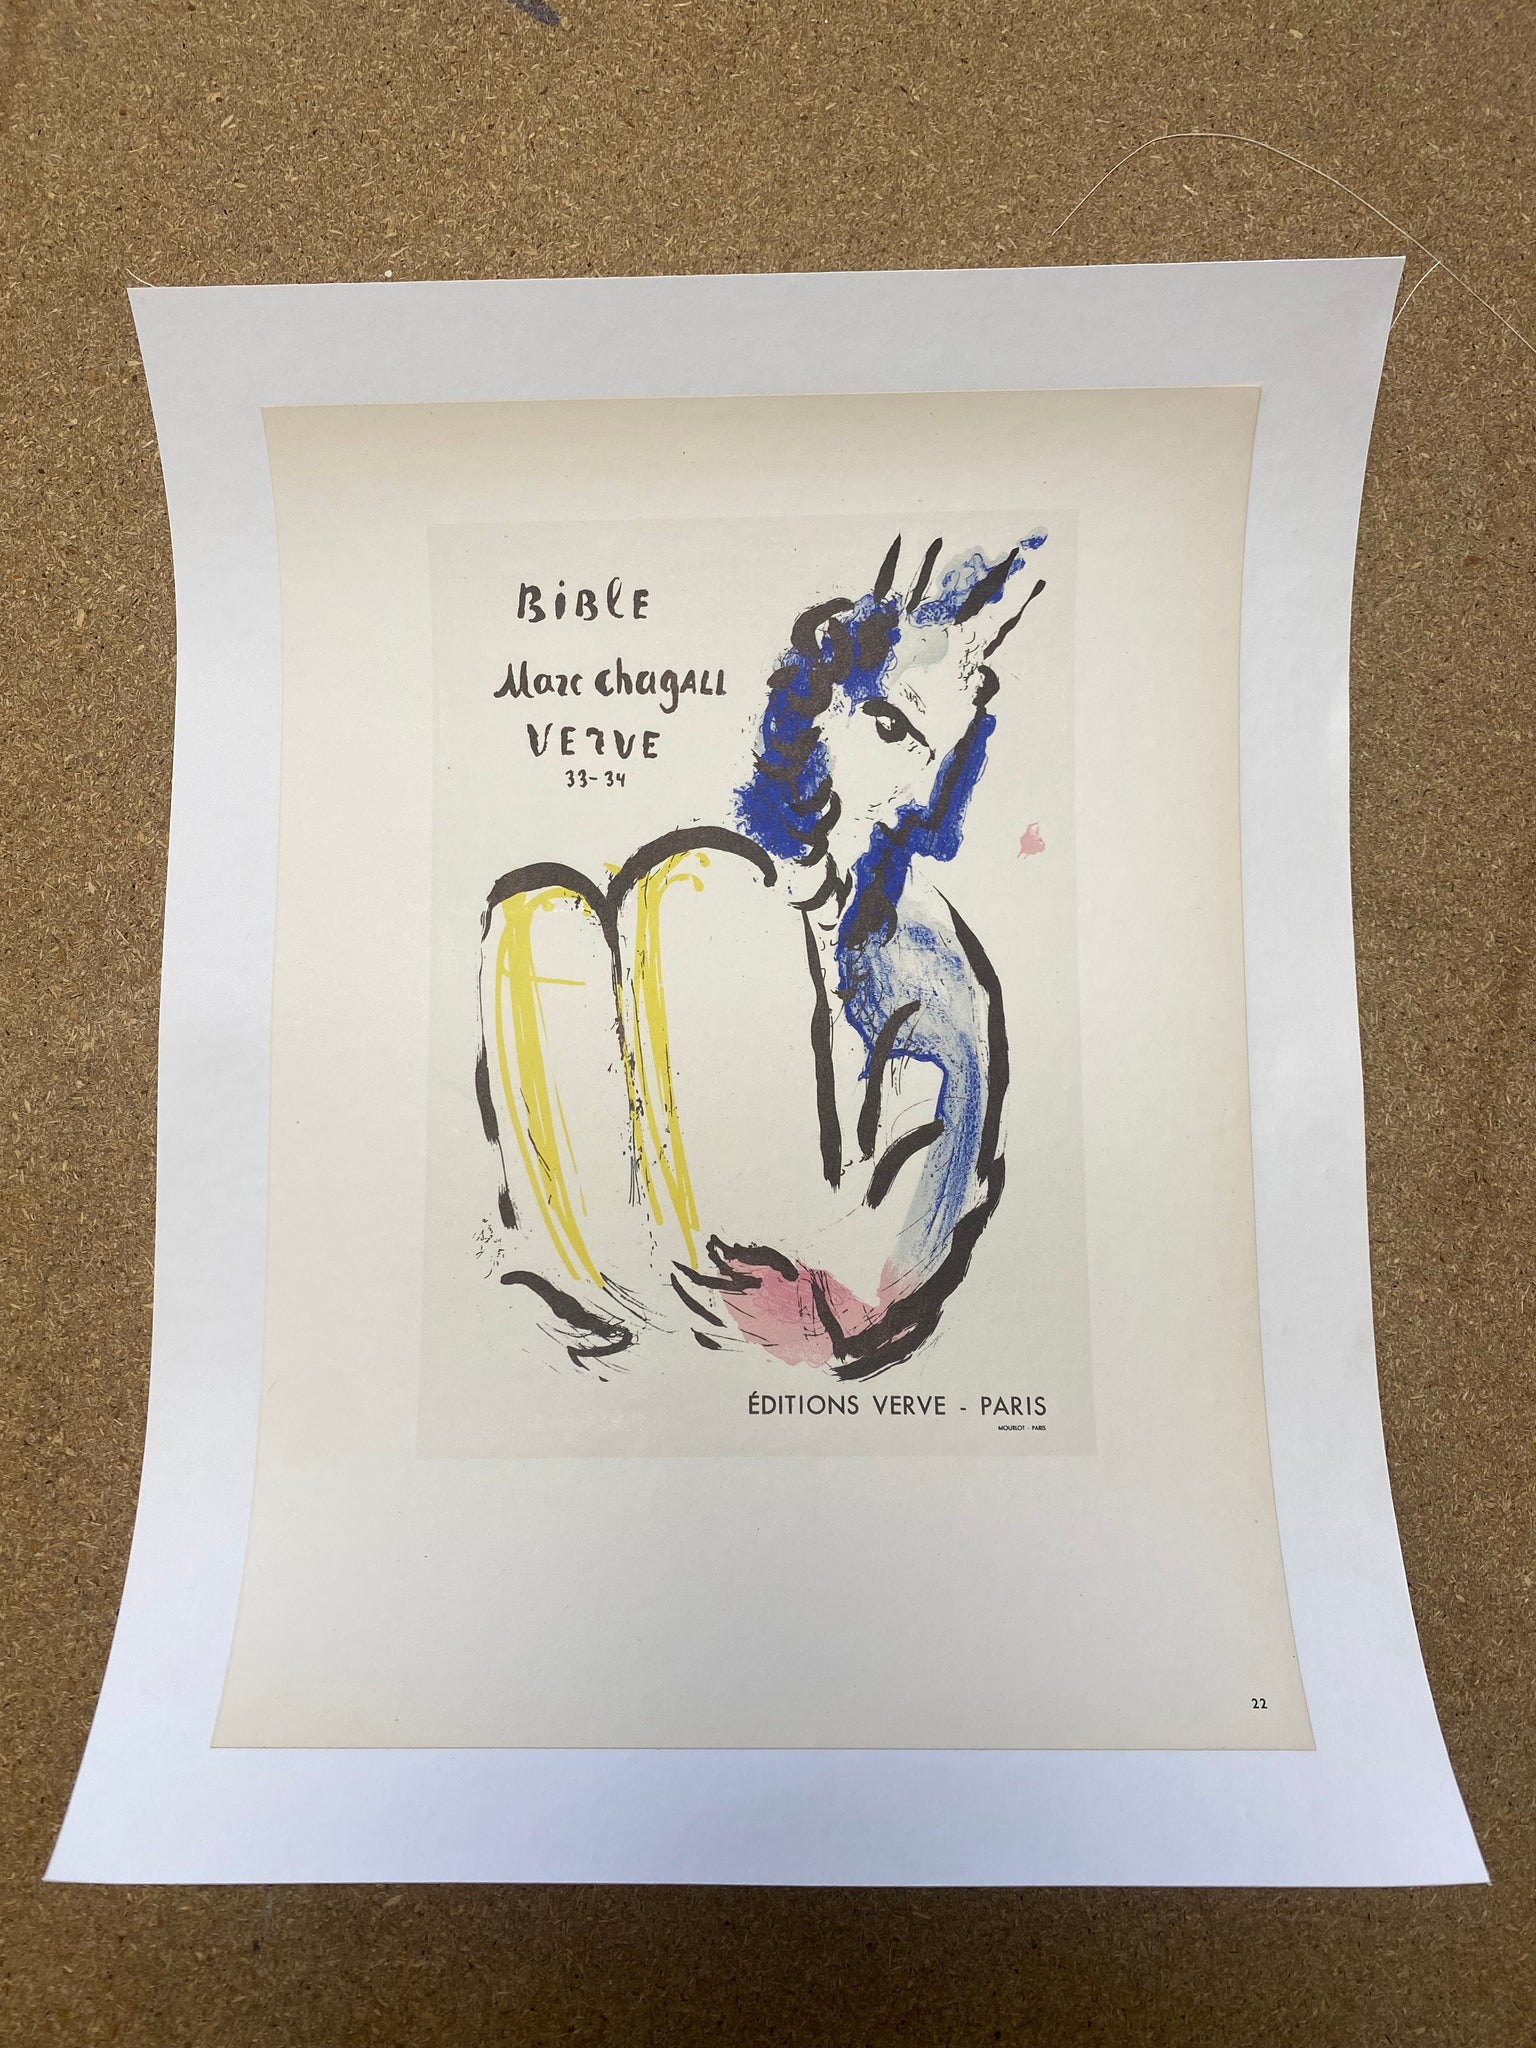 Affiche ancienne la Bible Verve 33-34 par Marc Chagall, 1956